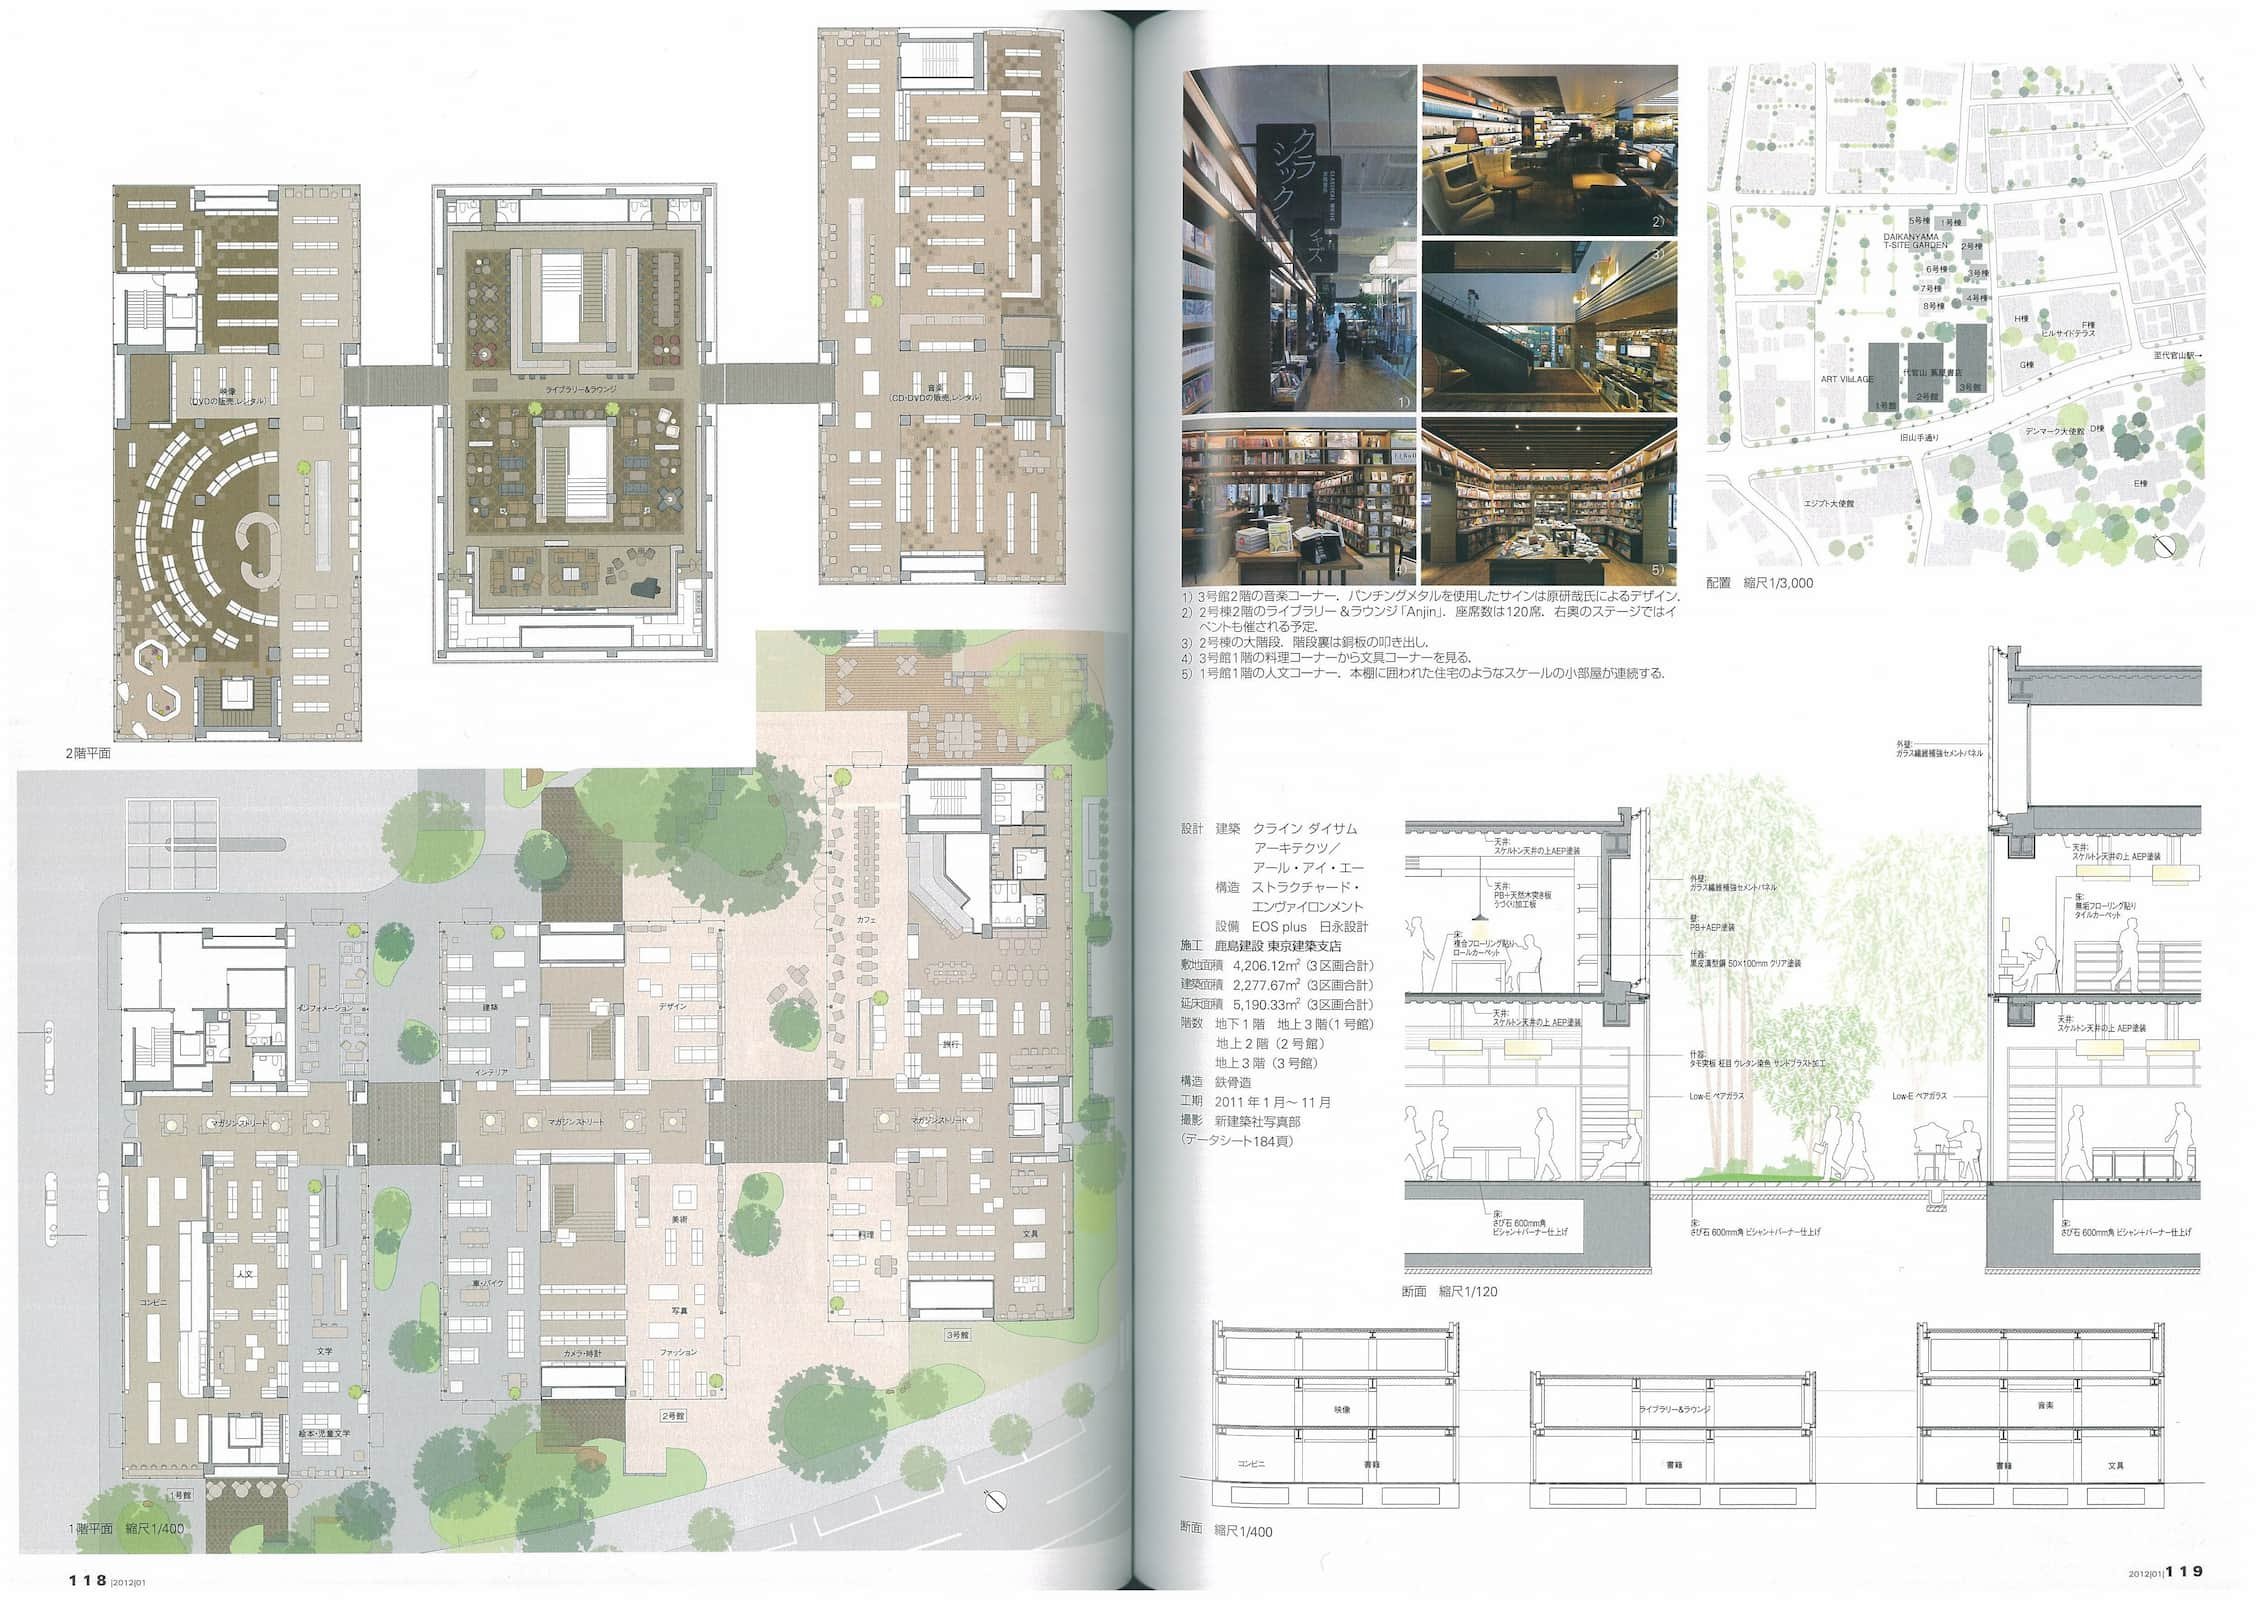 新建築 - New Architecture - January 2012_Page_4.jpg